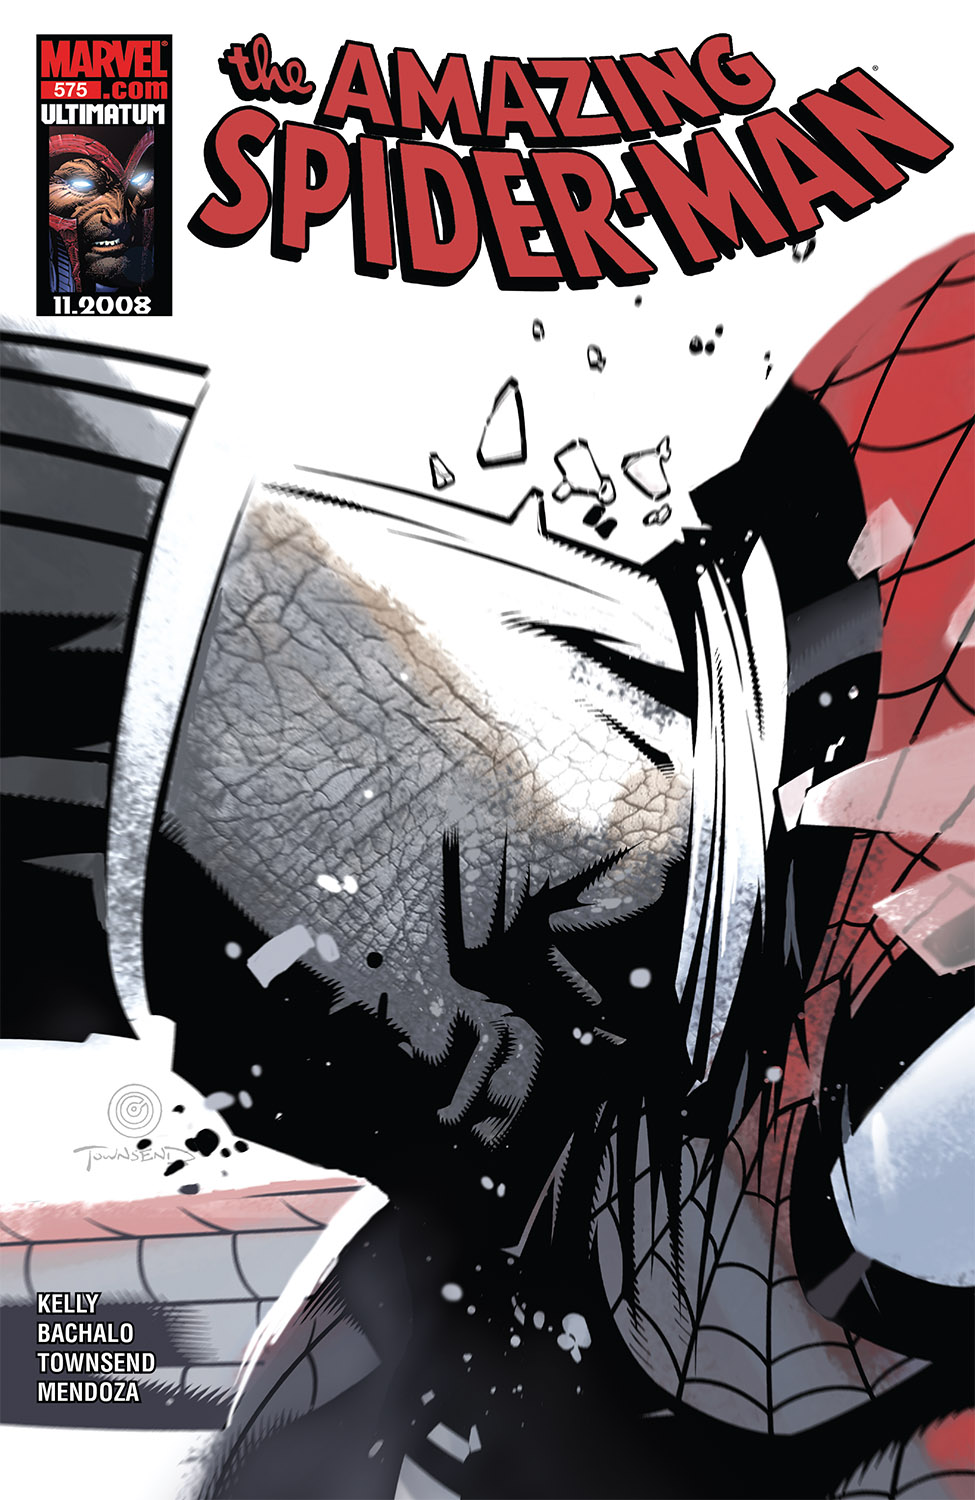 Amazing Spider-Man (1999) #575